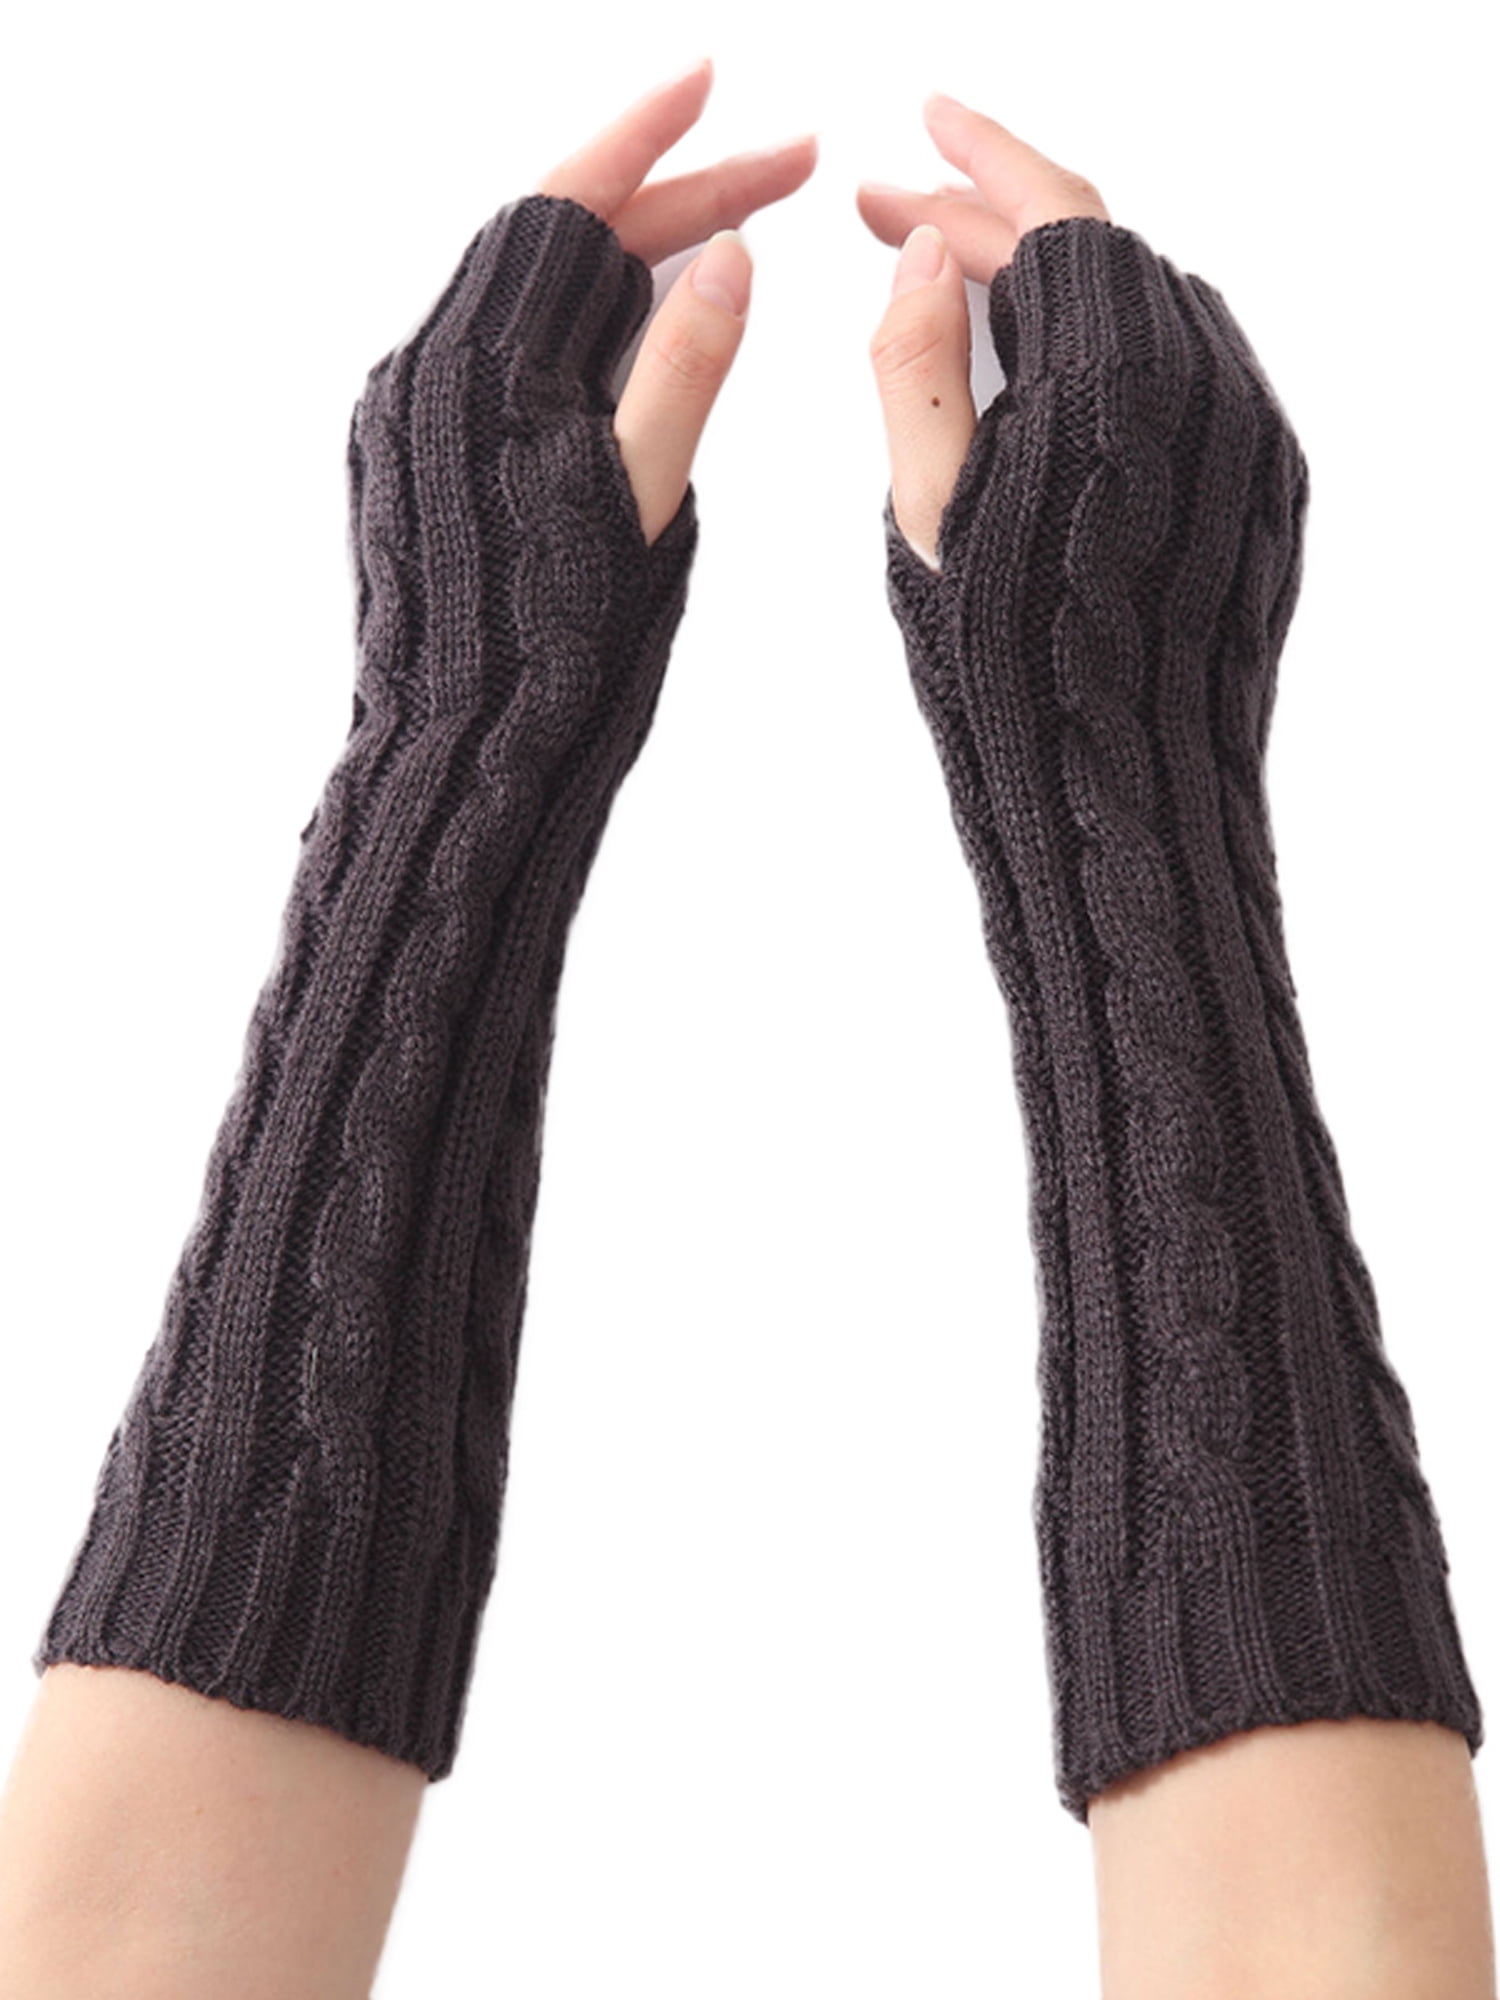 Fashion Women Winter Wrist Arm Hand Warmer Knitted Long Fingerless Mitten Gloves 